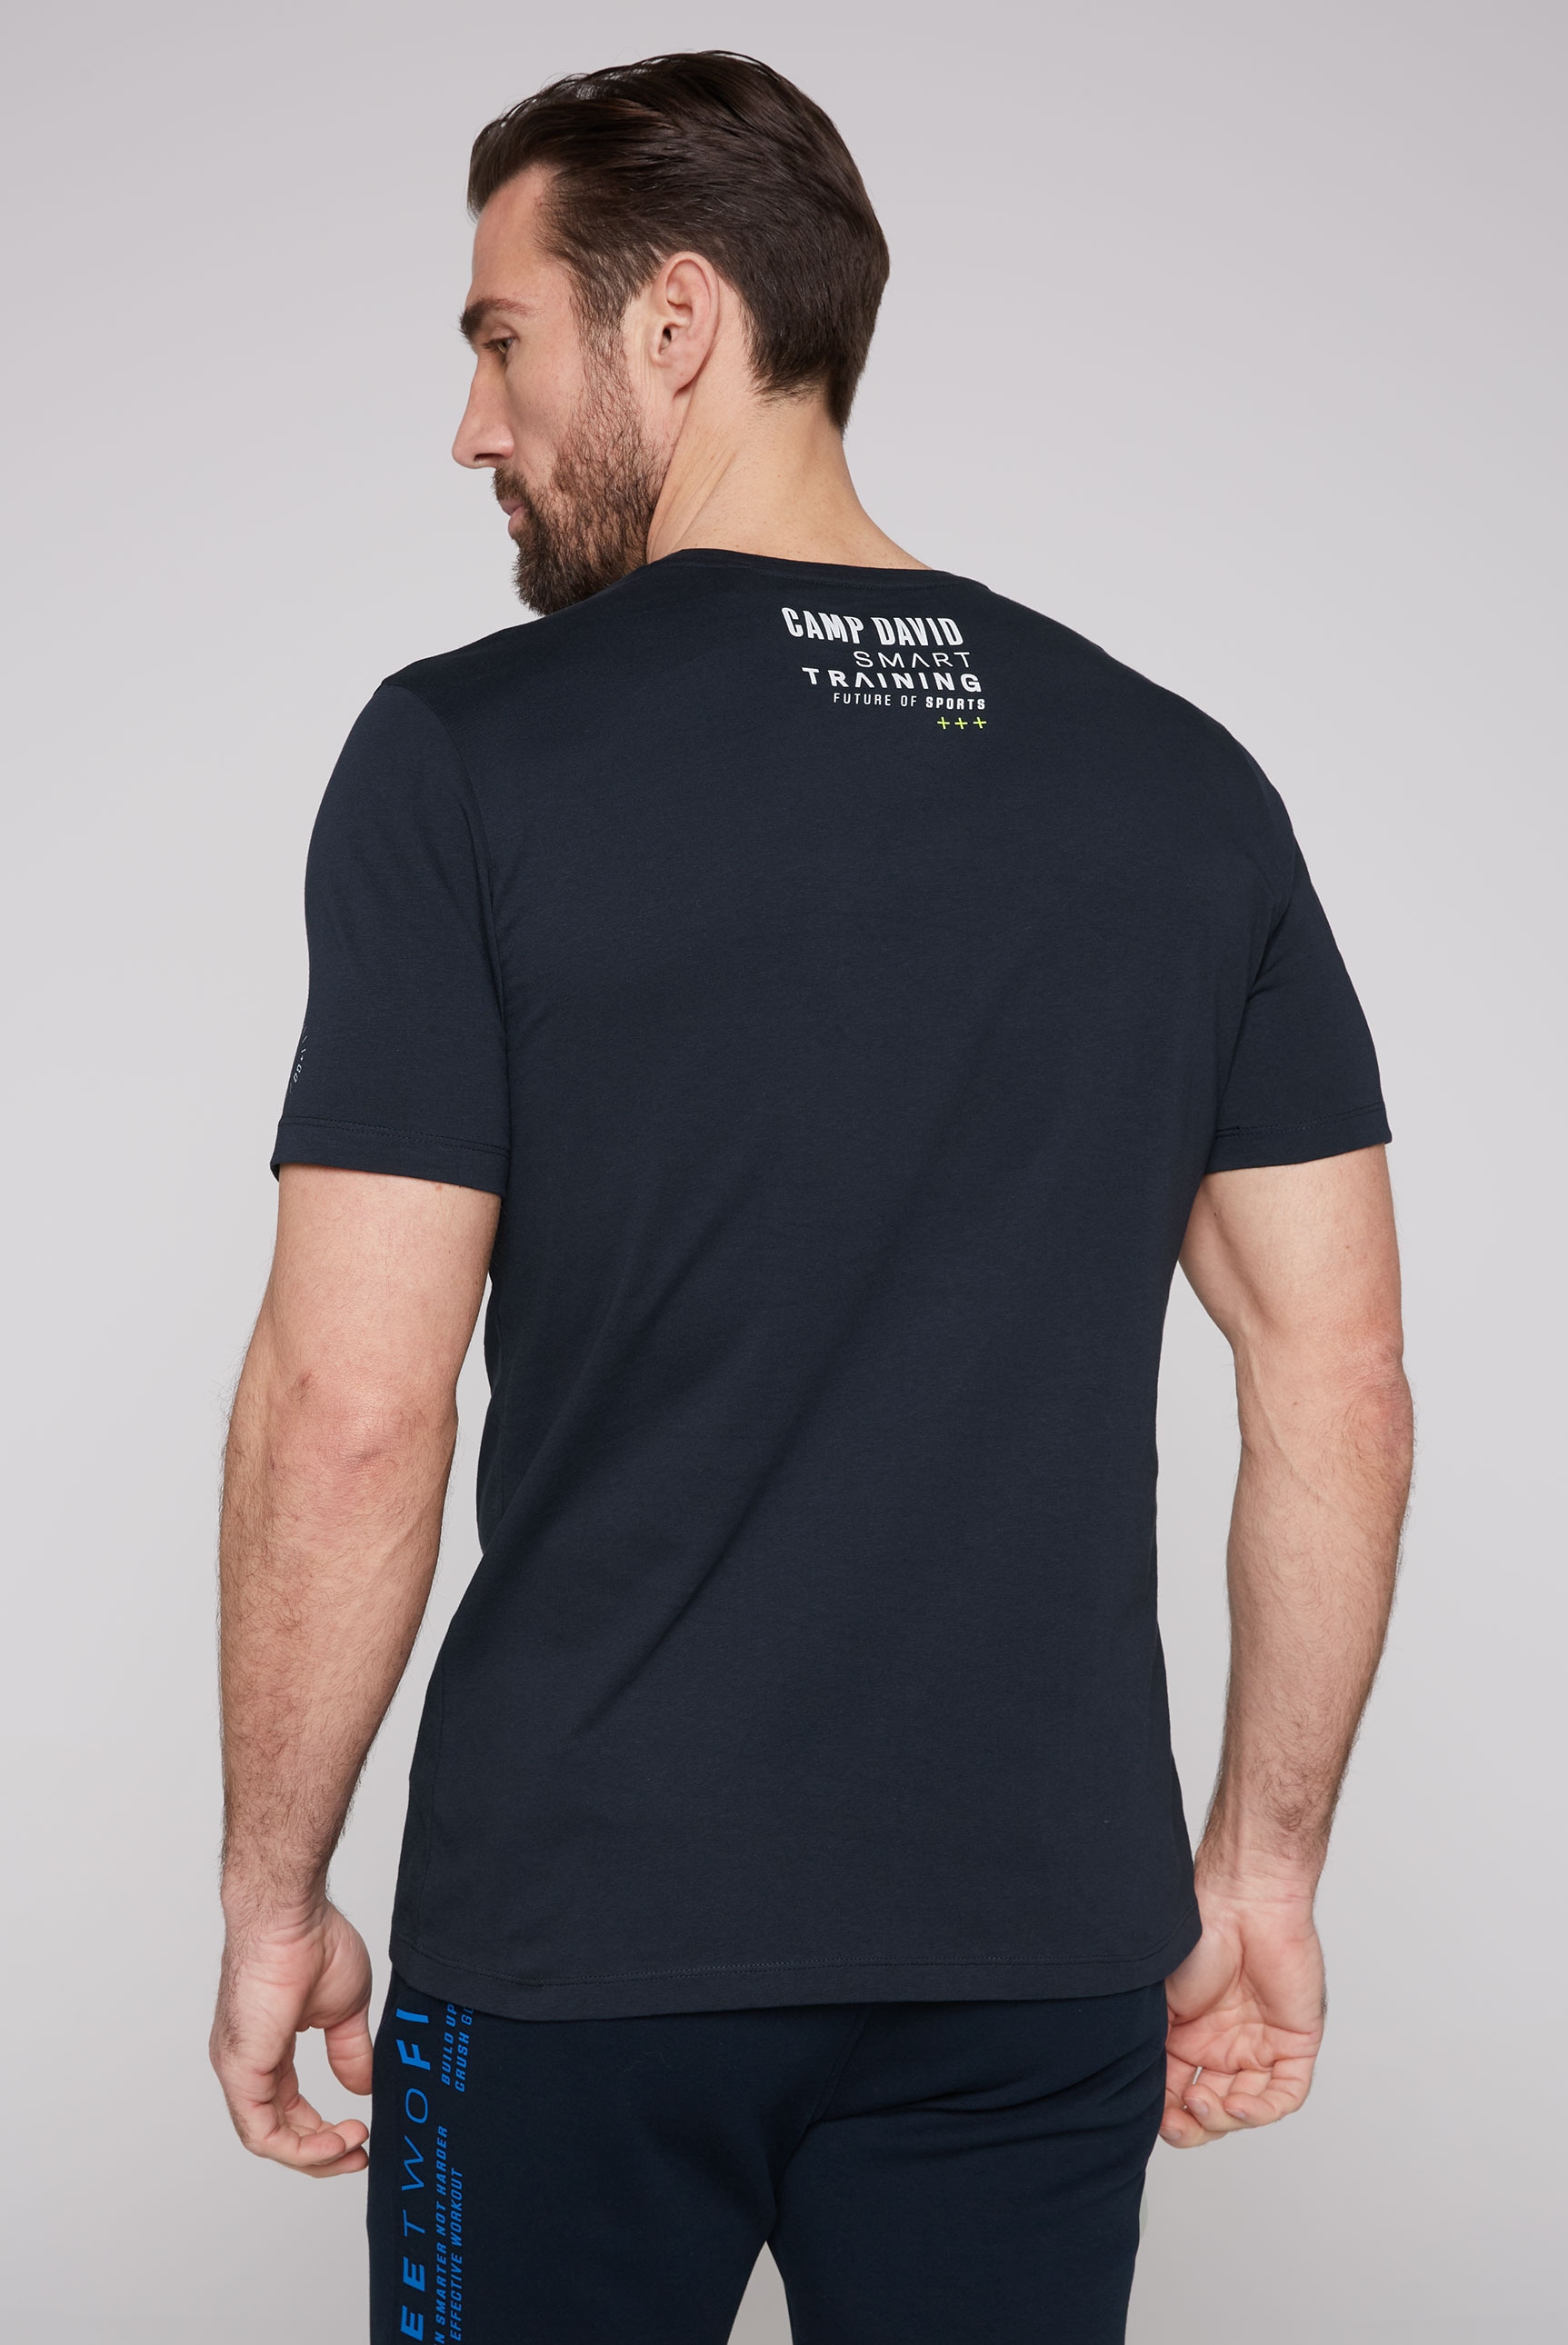 CAMP DAVID T-Shirt, mit kontrastreichen Prints